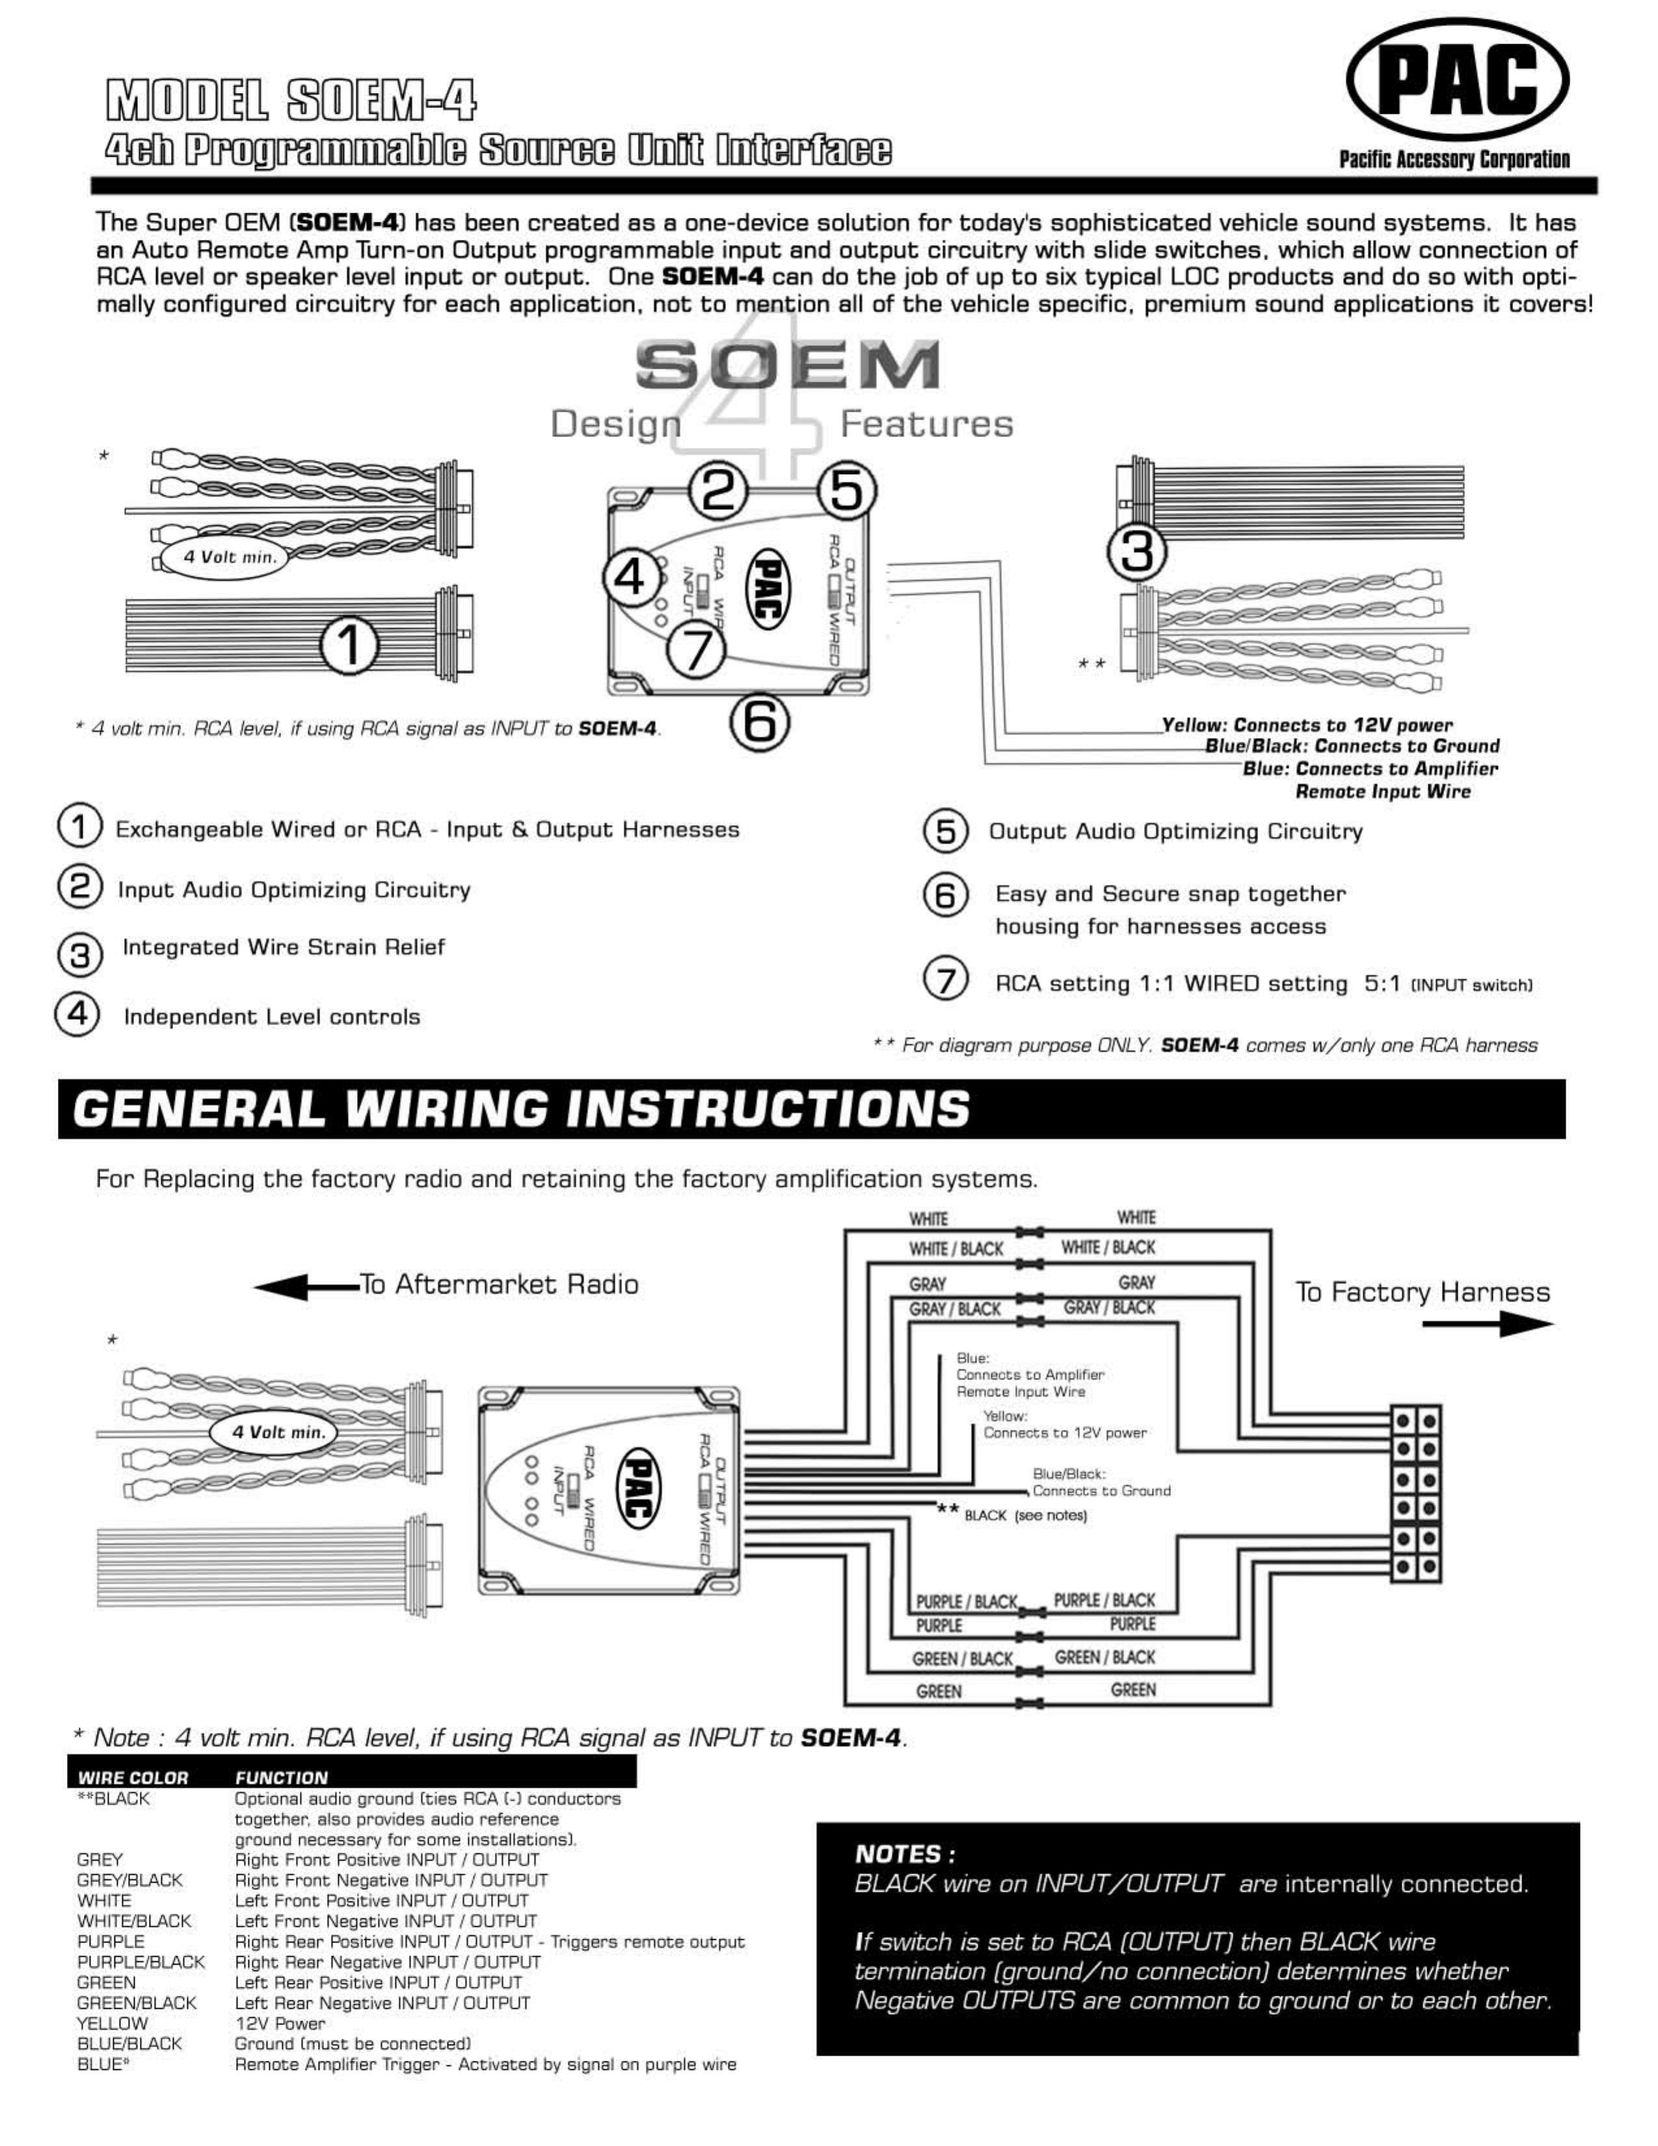 PAC SOEM-4 Network Card User Manual